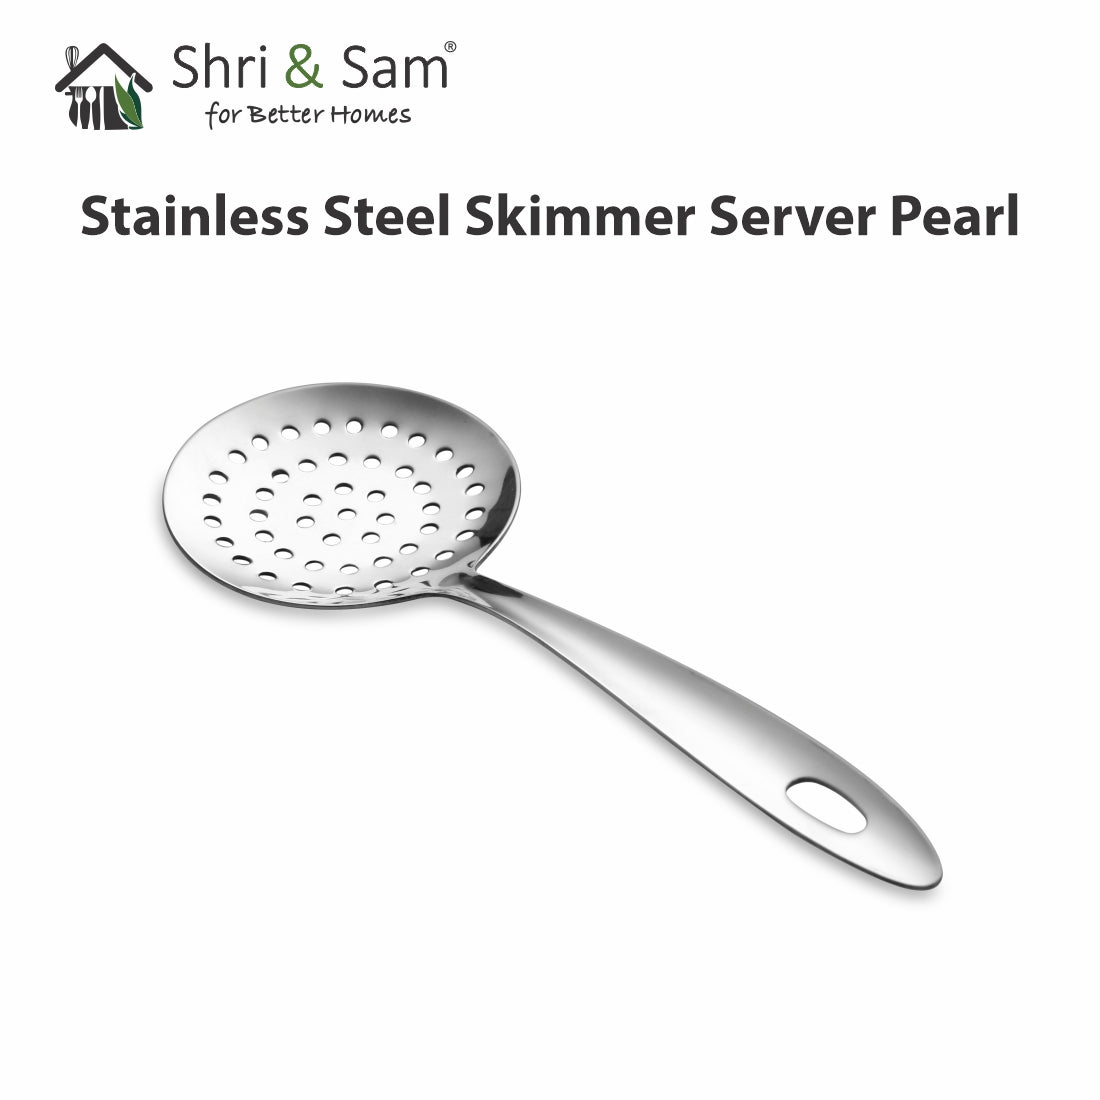 Stainless Steel Skimmer Server Pearl